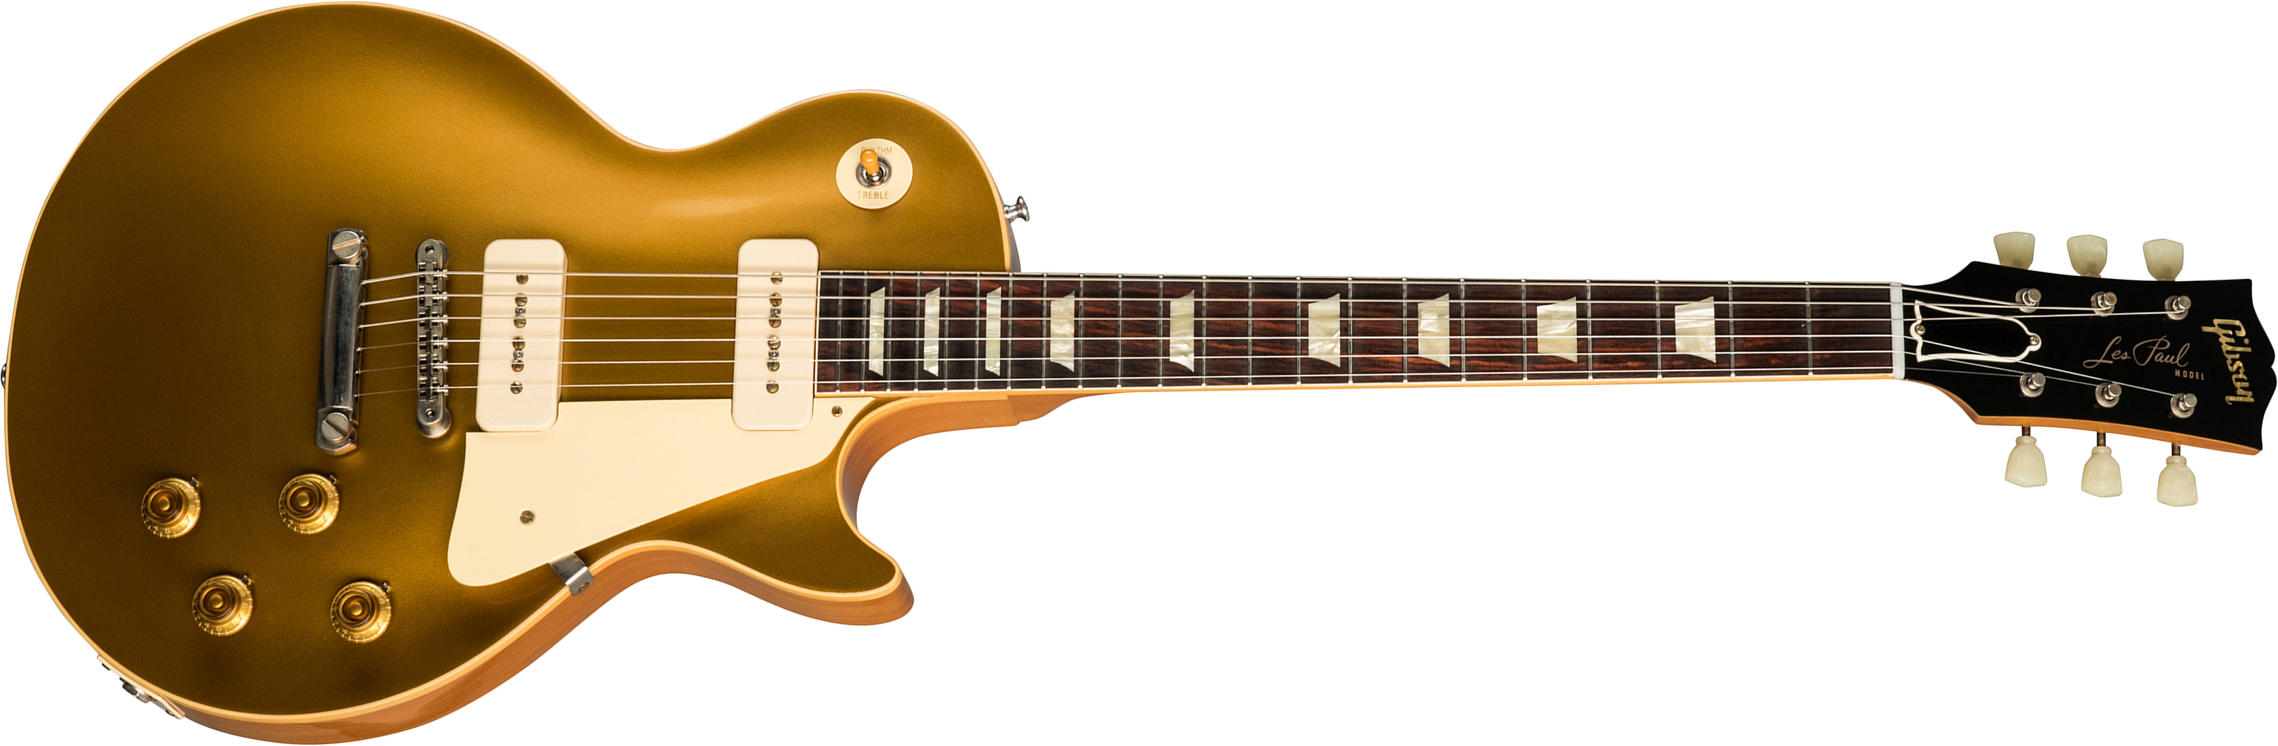 Gibson Custom Shop Les Paul Goldtop 1956 Reissue 2019 2p90 Ht Rw - Vos Double Gold - Guitare Électrique Single Cut - Main picture